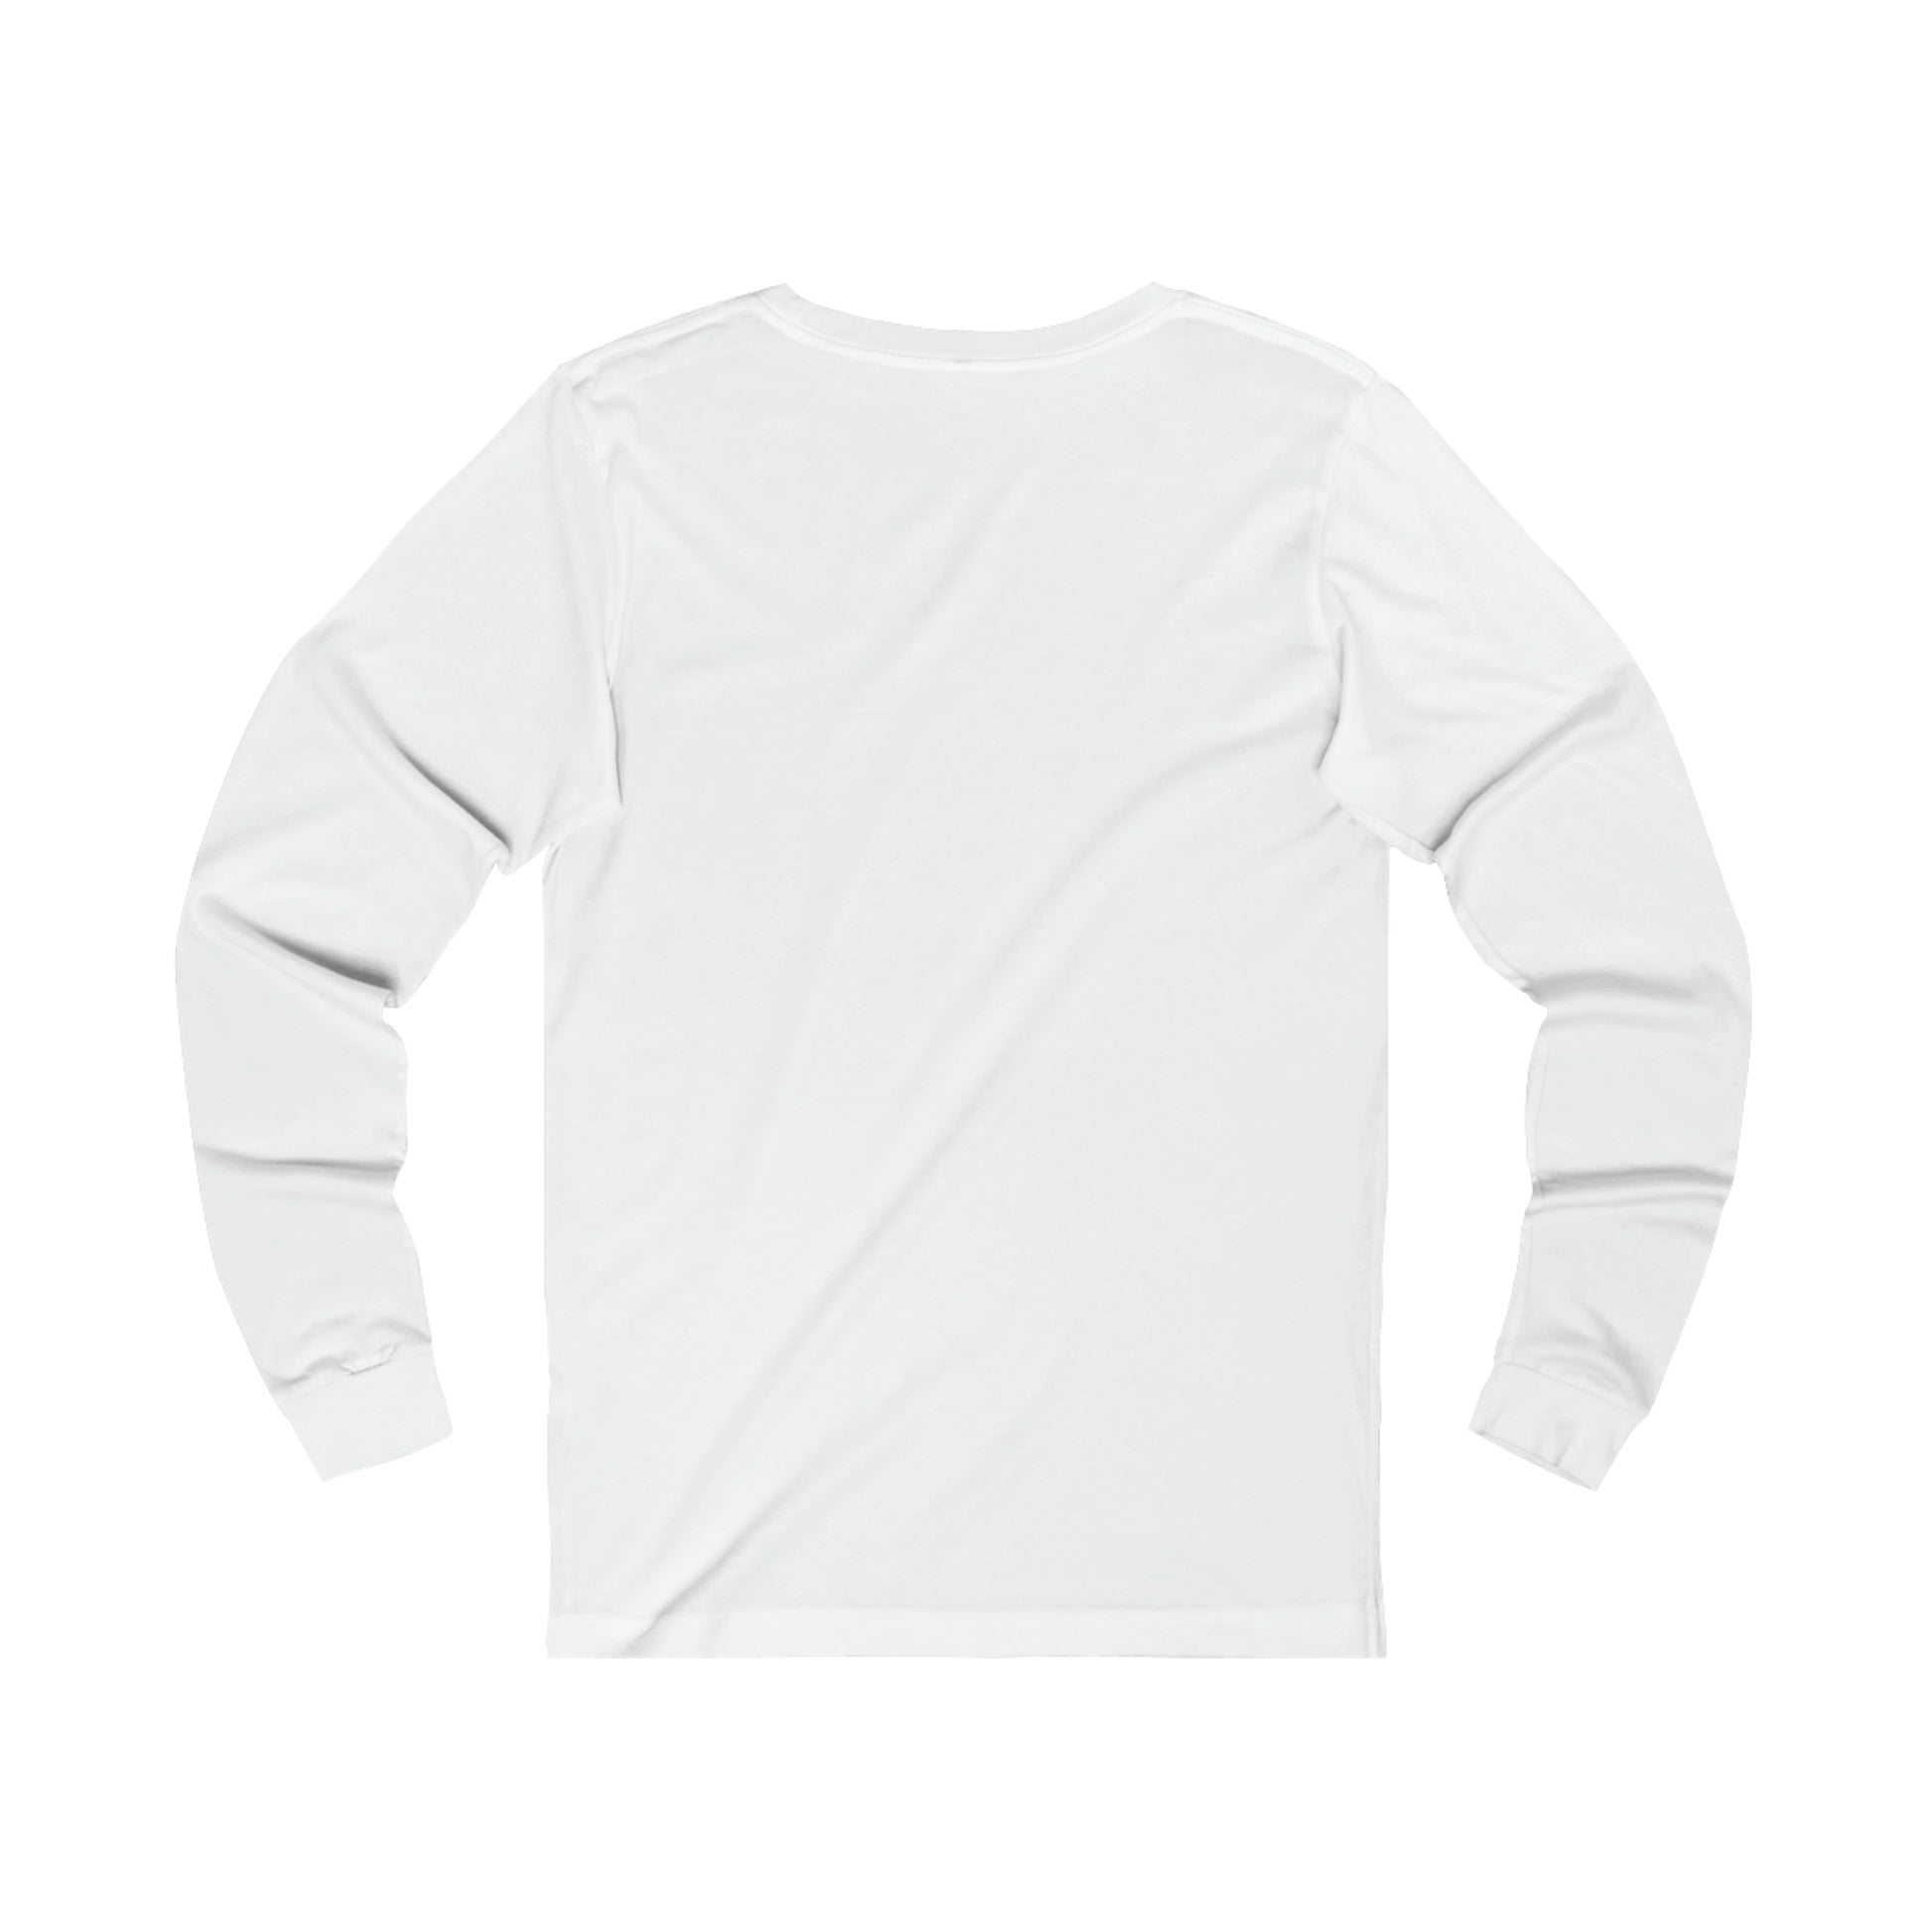 “Endless Sun” Long Sleeve T-Shirt - Utah.com